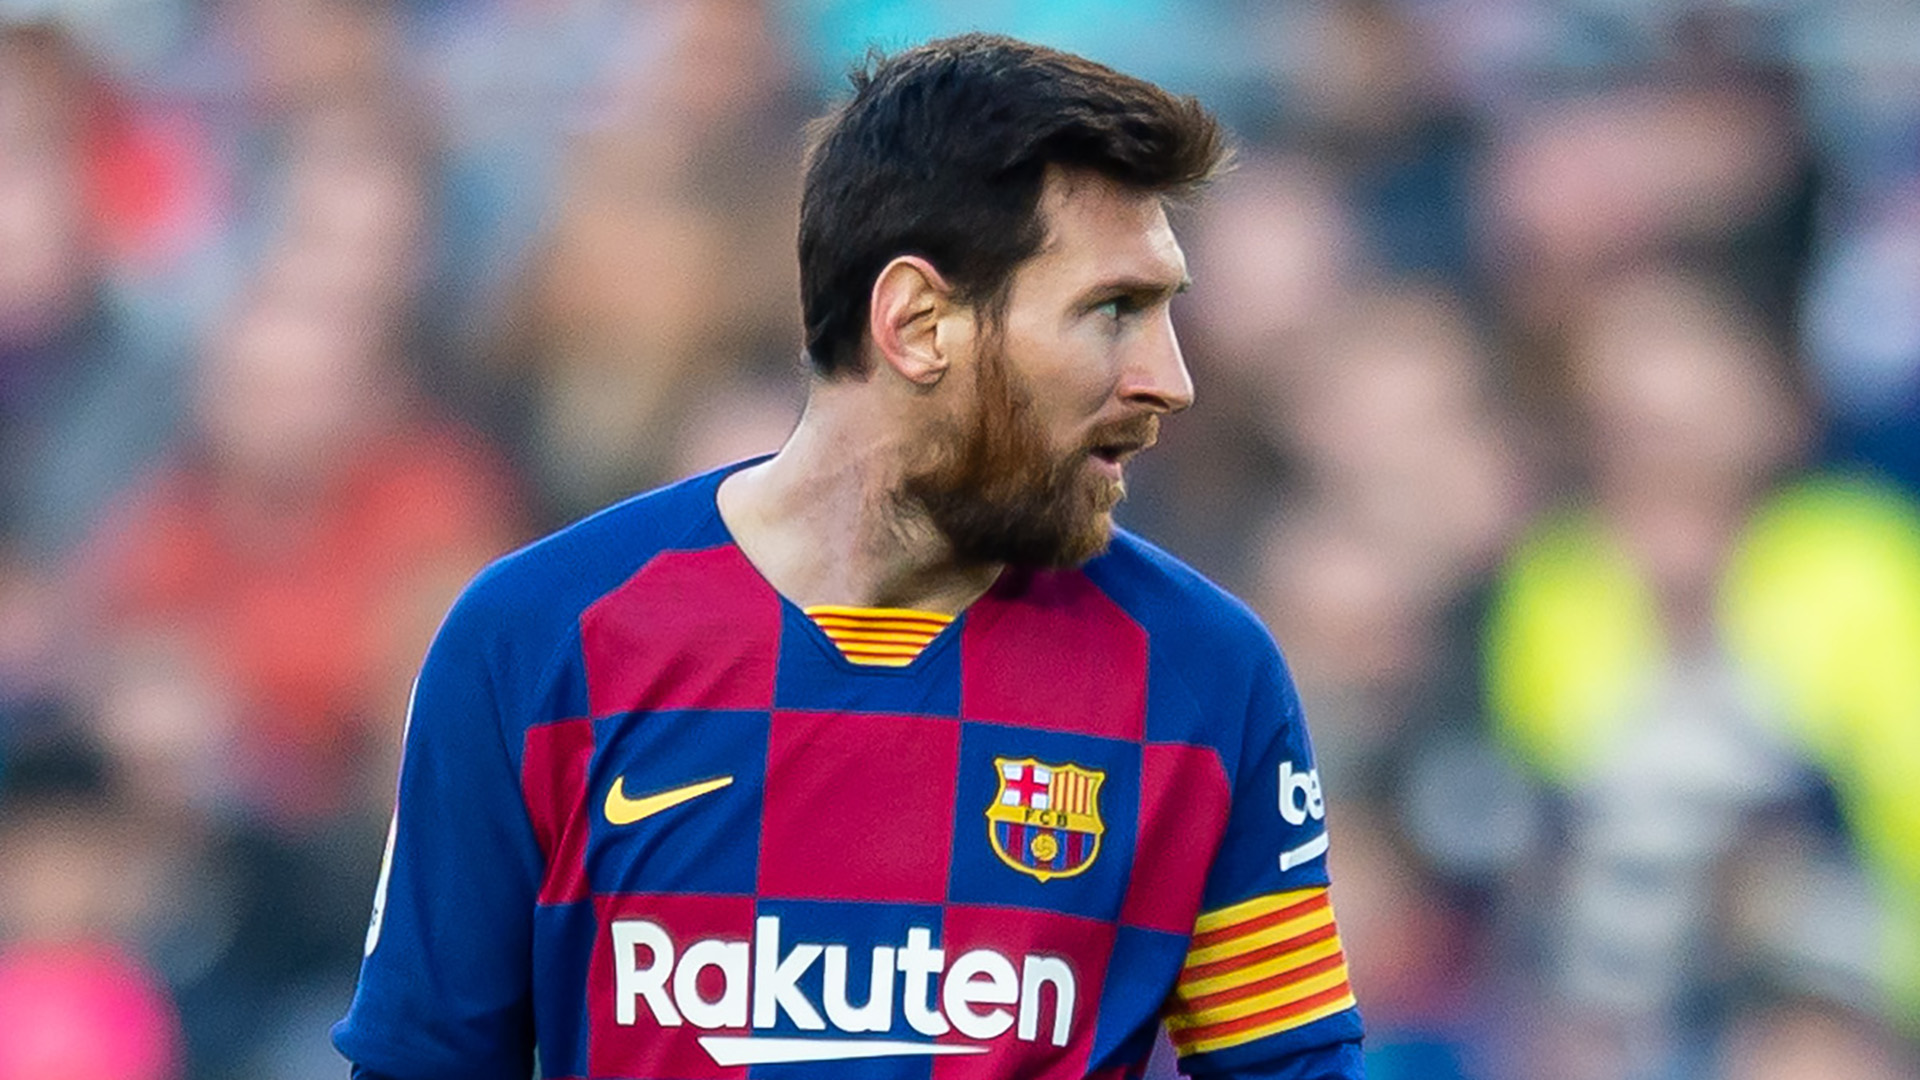 OFFICIEL - Lionel Messi annonce qu'il reste au Barça